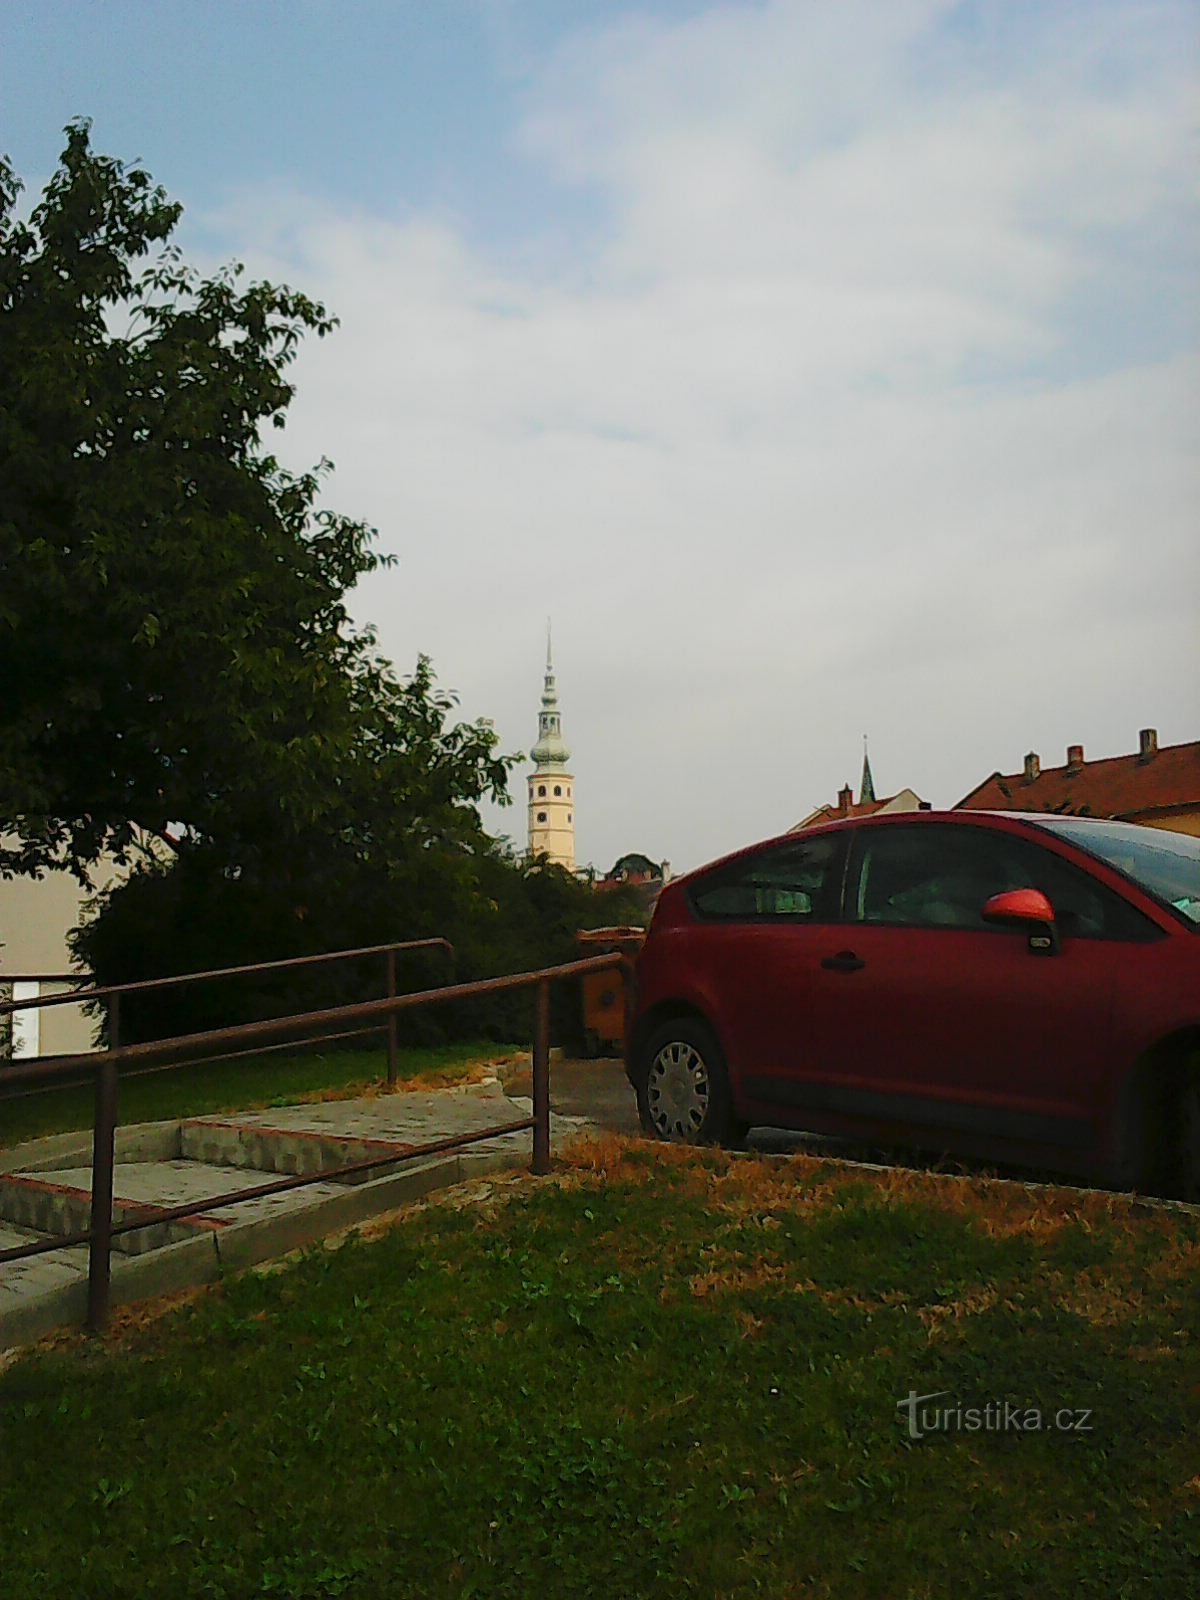 Kula dvorca Tovačovské vidljiva iz daljine - moja glavna referentna točka :)